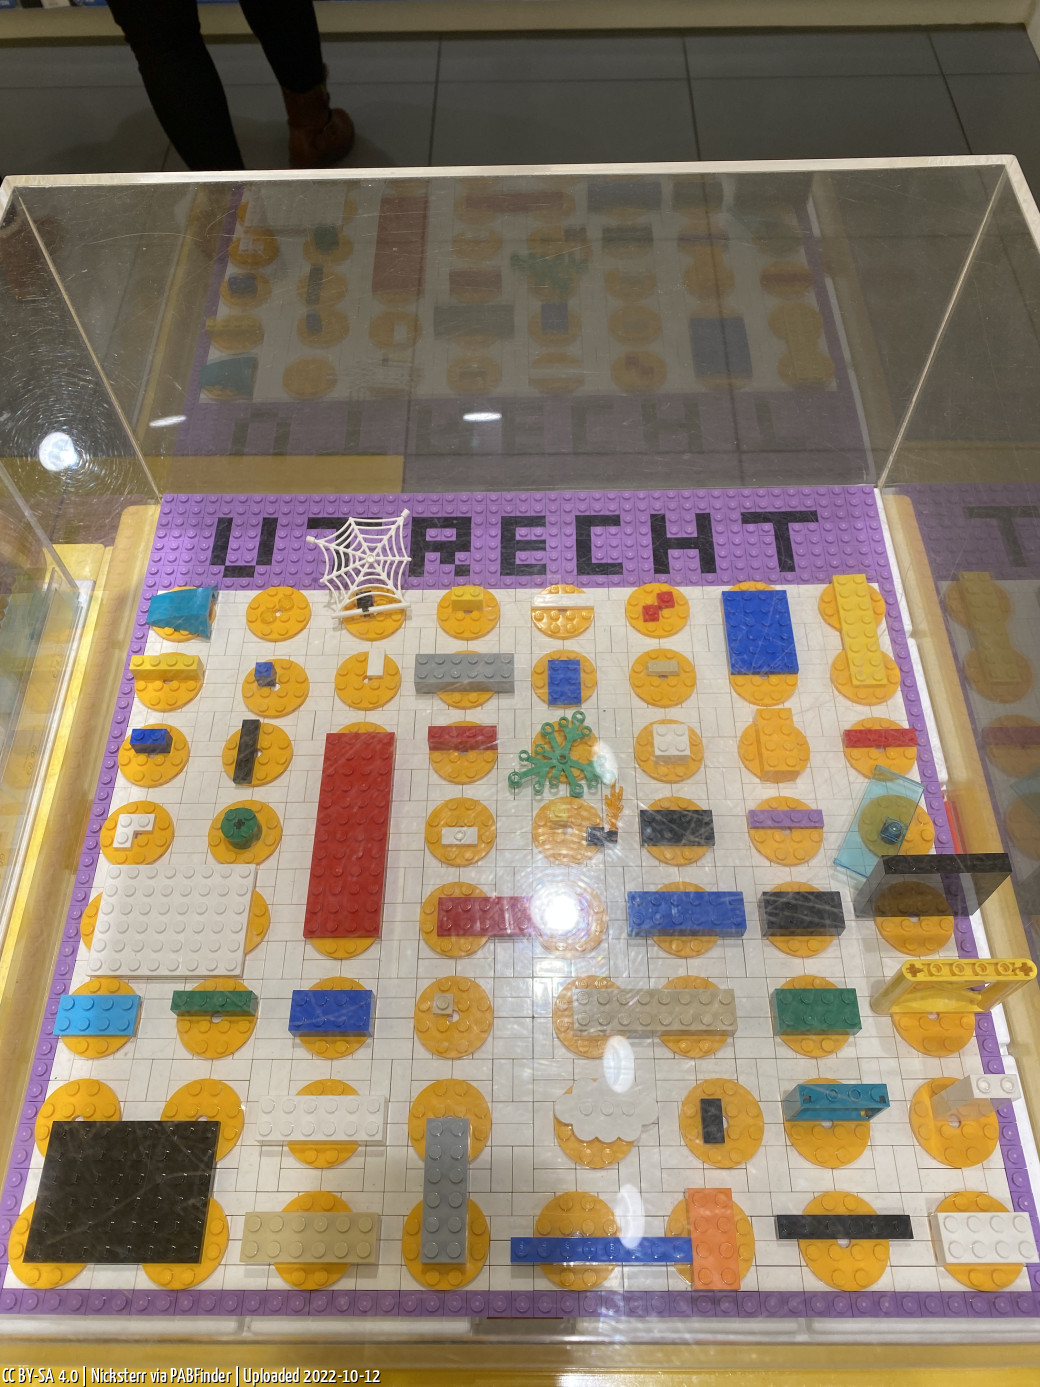 Pick a Brick Utrecht (Nicksterr, 10/12/22, 9:34:55 PM)